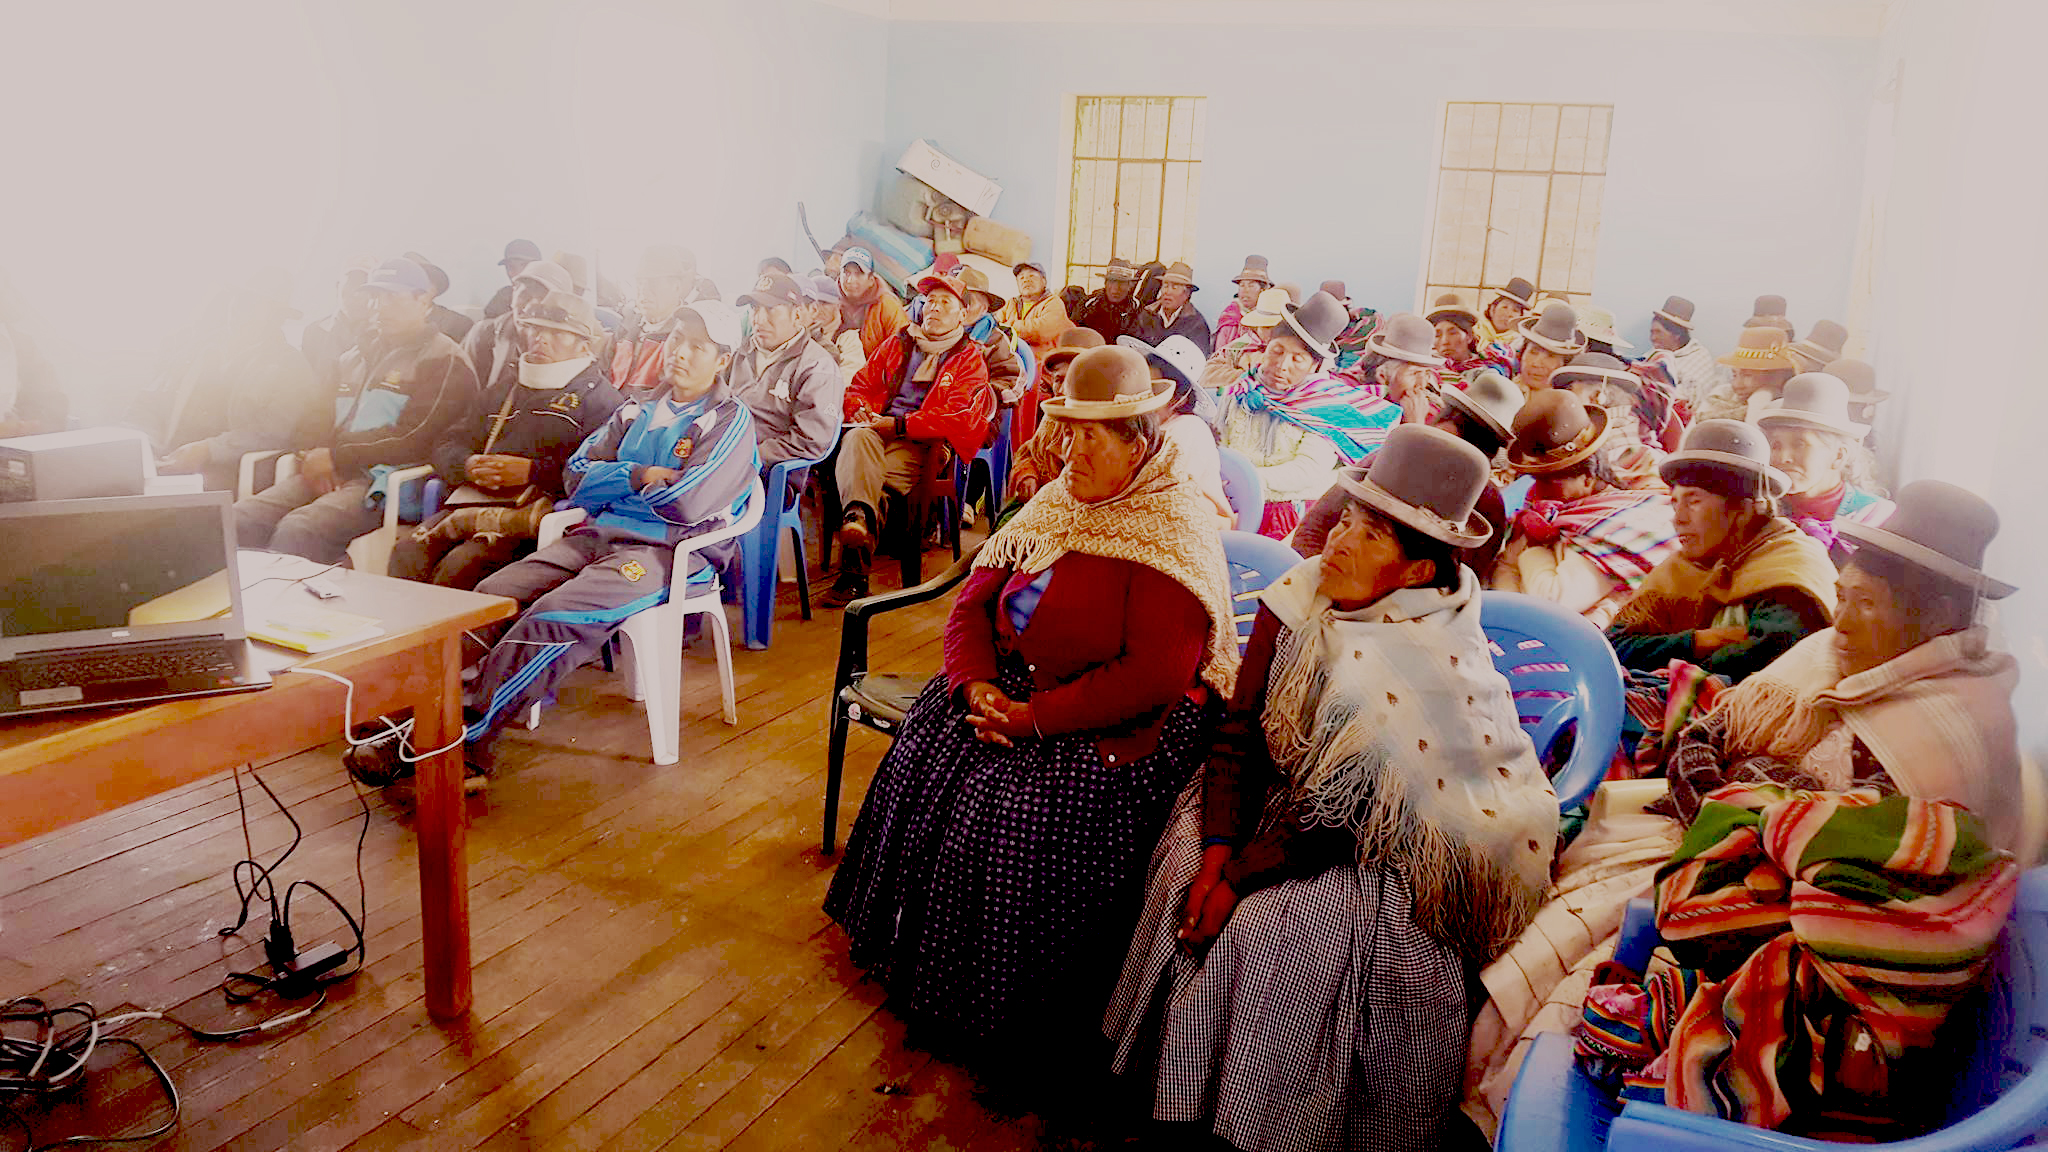 Realización del III Taller de fortalecimiento, Realización del tema “Autonomía y Libre Determinación de los pueblos indígenas”, de la Comunidad de Callaza del distrito de Huacullani.